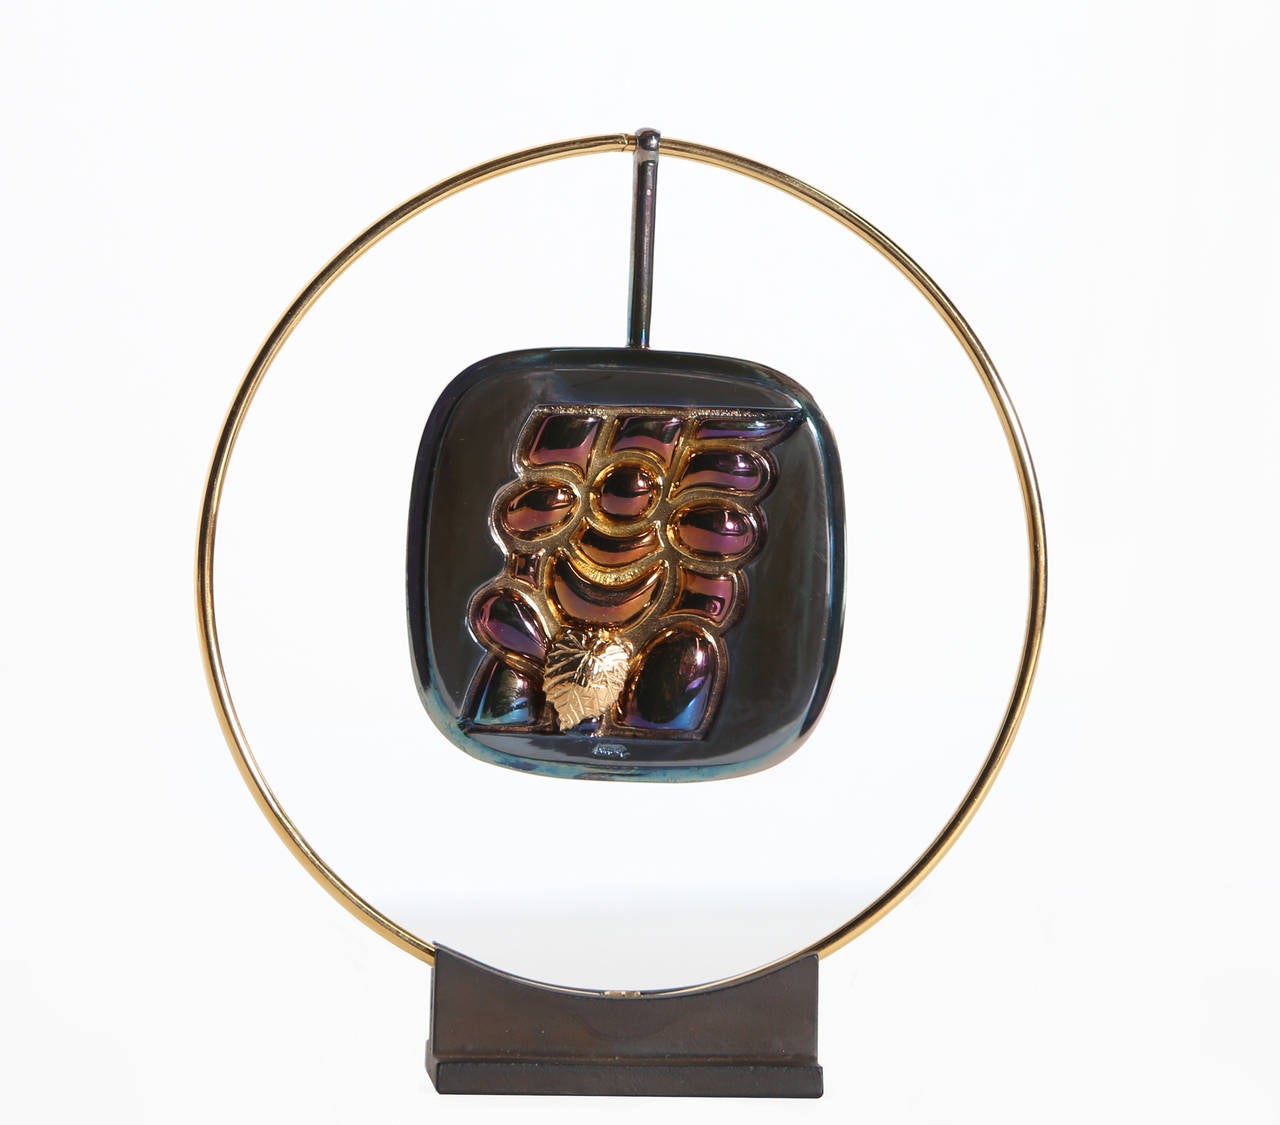 Eine originelle, tragbare Skulptur von Berrocal.  

Künstler: Miguel Berrocal, Spanier (1933 - 2006)
Titel: Torso Verona
Jahr: 1980
Medium: Bronzeskulptur, Signatur und Nummerierung eingraviert
Auflage: 1000
Größe: 5,5 x 5 x 1,25 Zoll (13,97 x 12,7